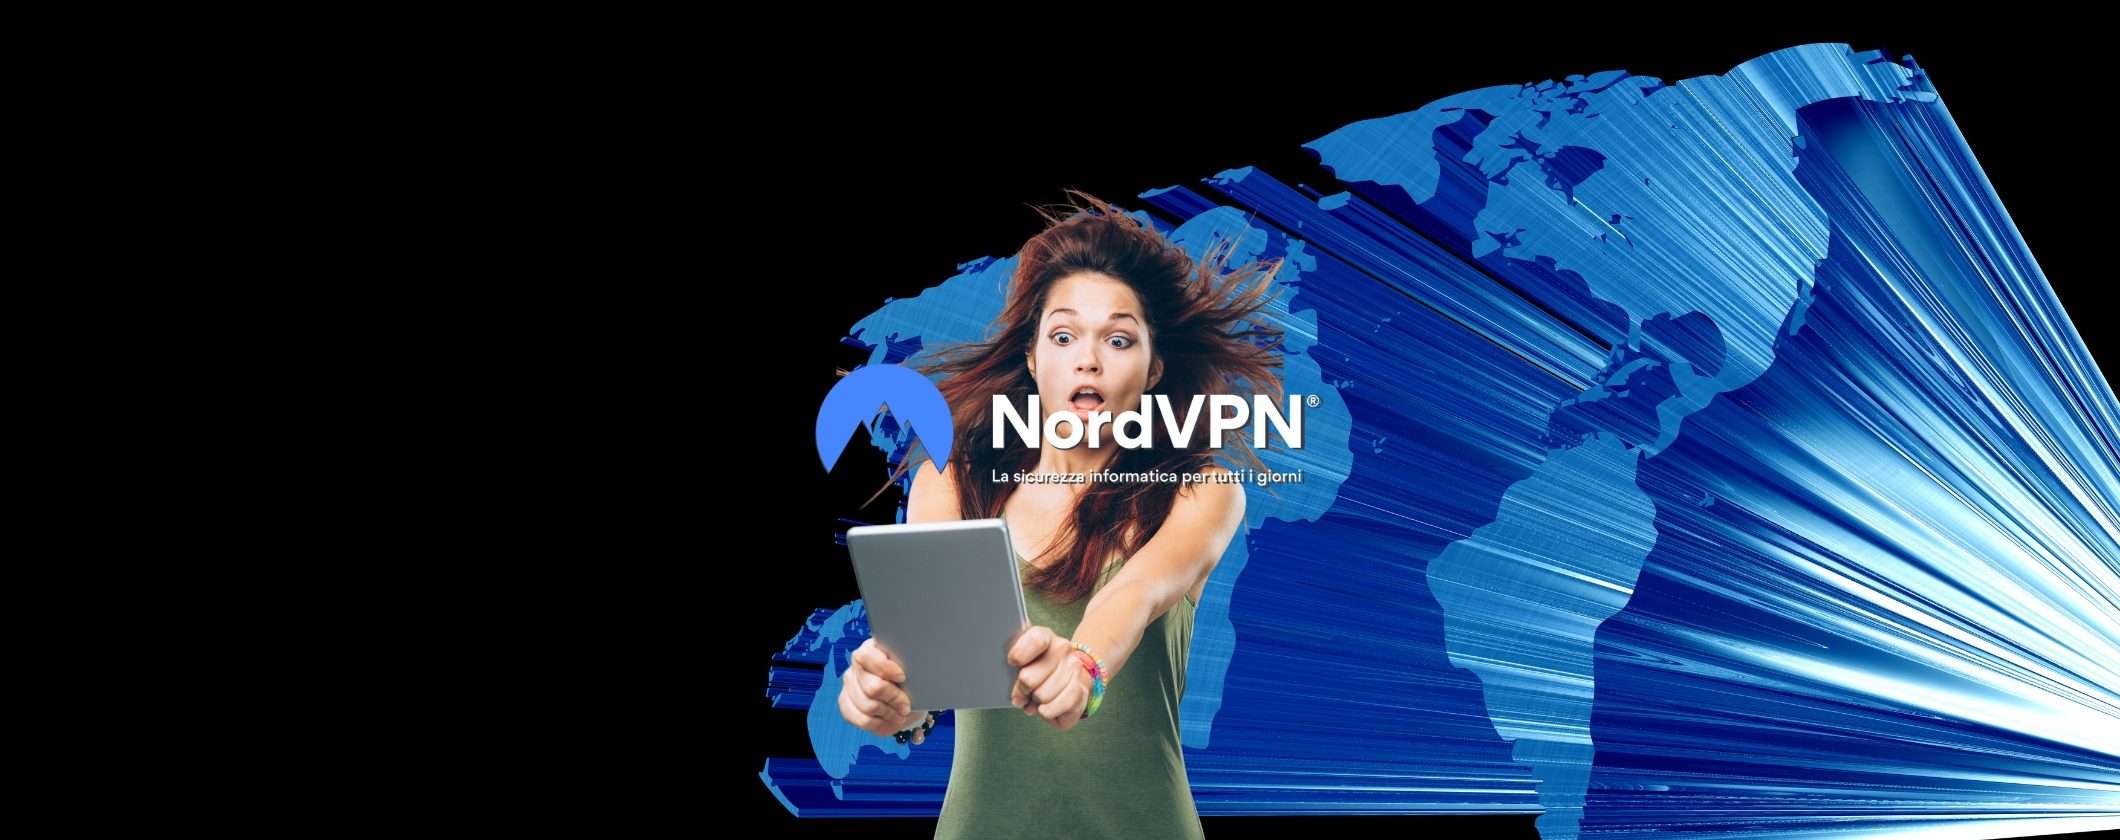 NordVPN è la VPN affidabile per streaming e sicurezza